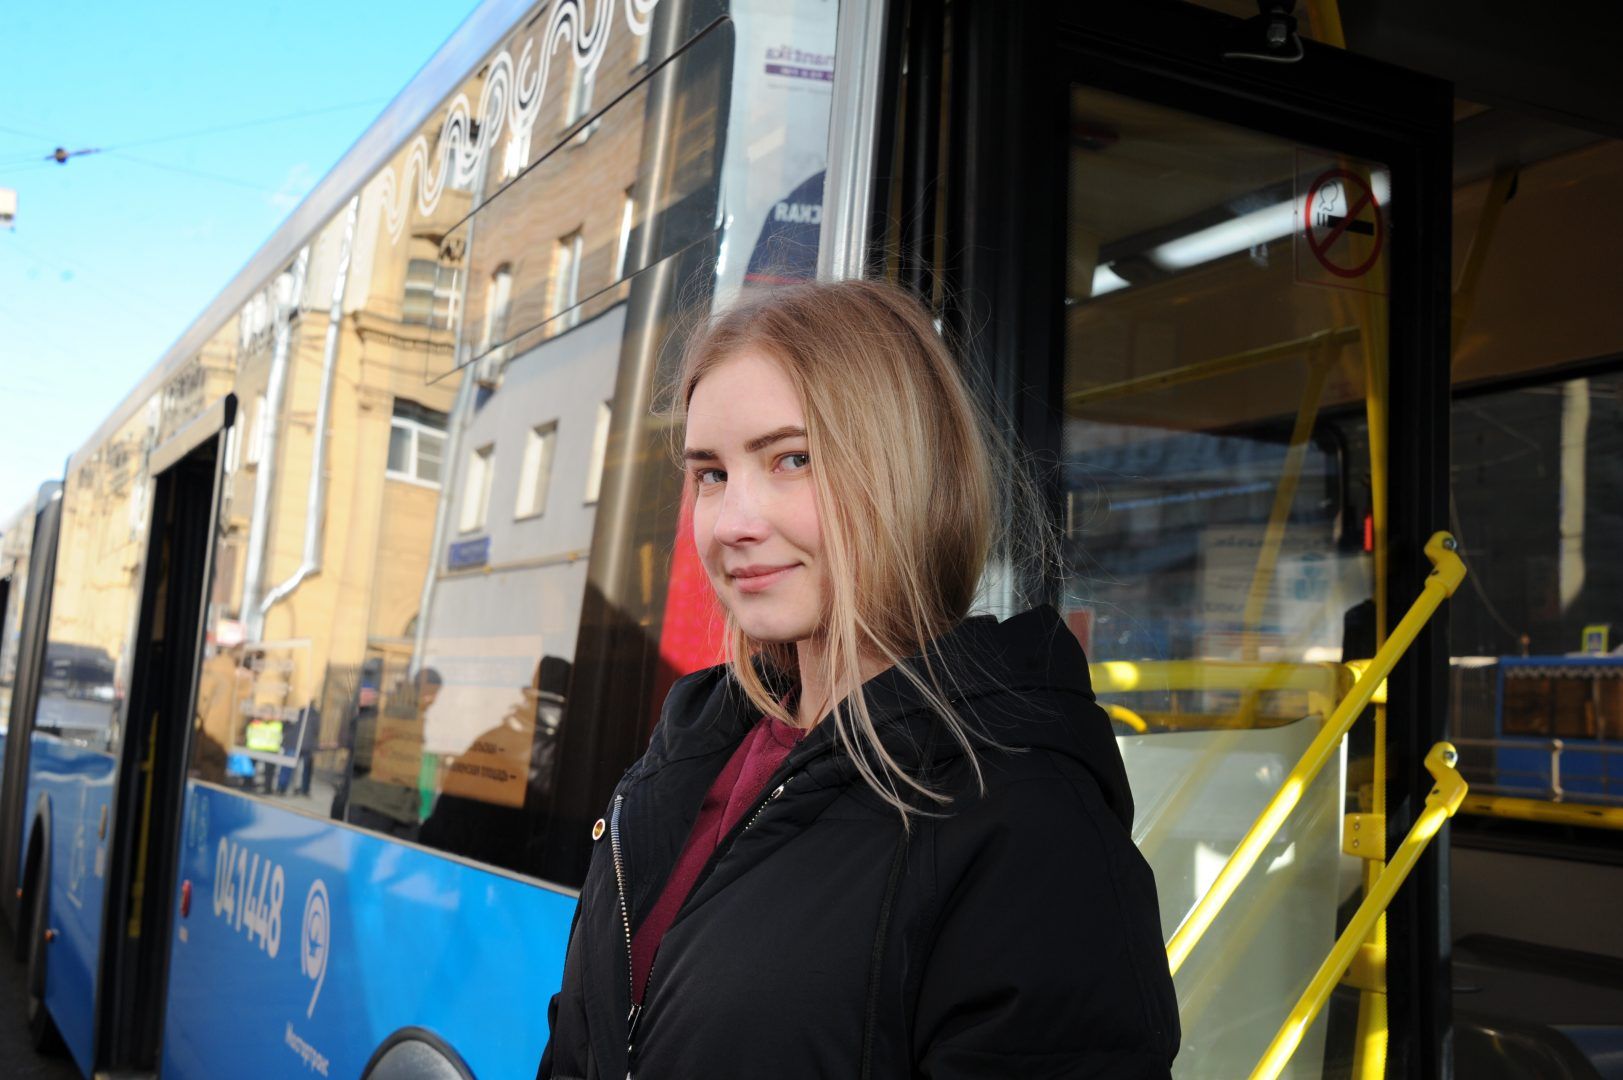 Пассажиры могут бесплатно воспользоваться автобусами и троллейбусами до 11 апреля. Фото: Светлана Колоскова